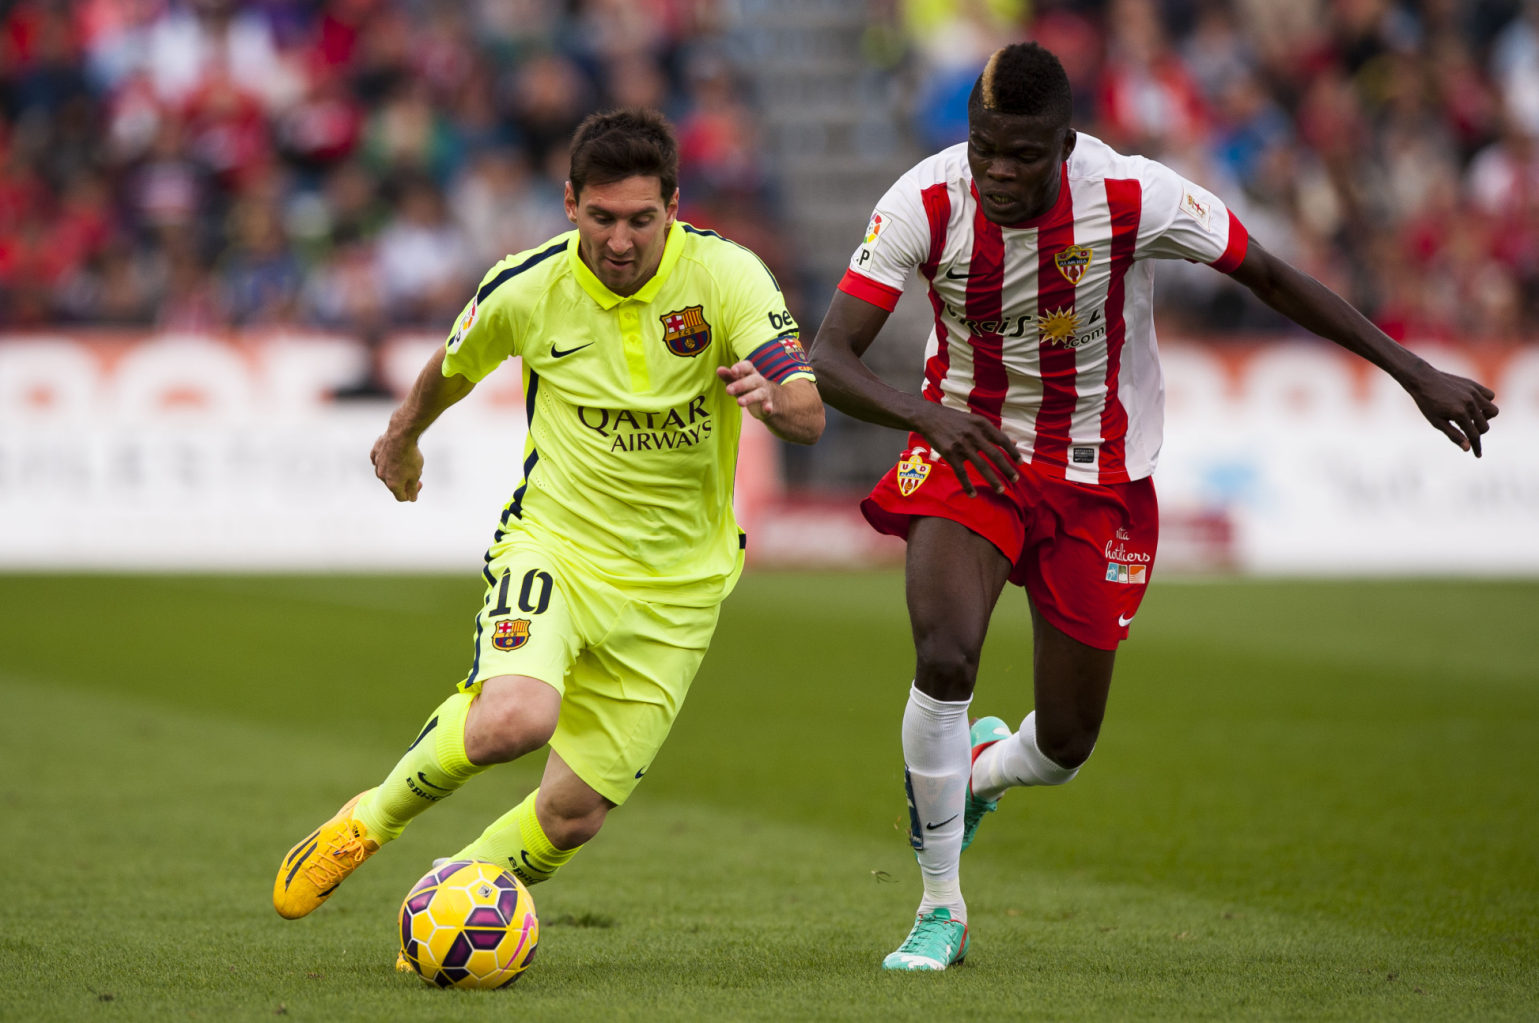 Lionel Messi running past a defender in Almeria vs Barcelona